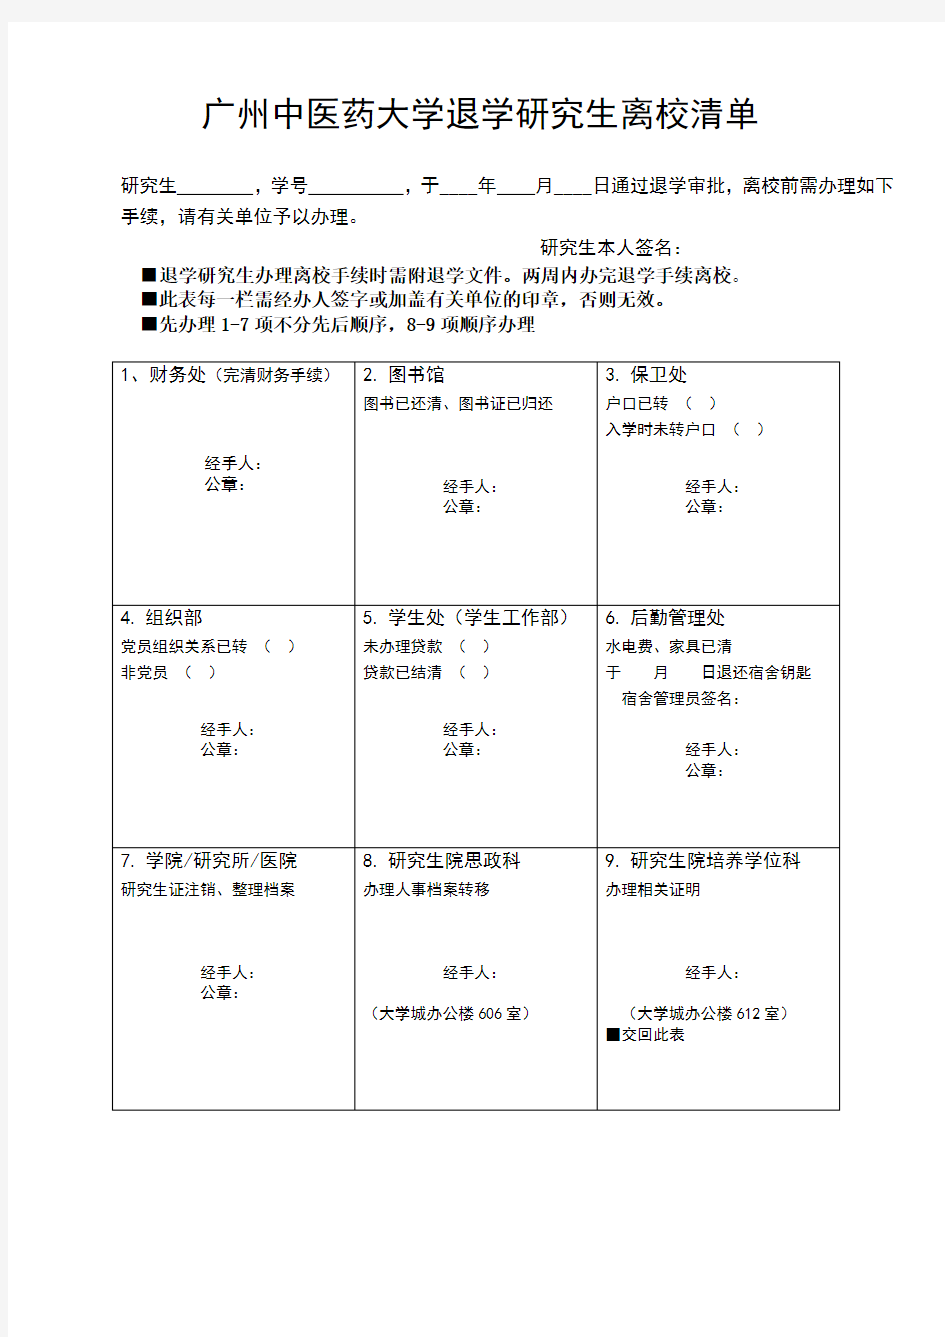 广州中医药大学研究生退学申请表2020版